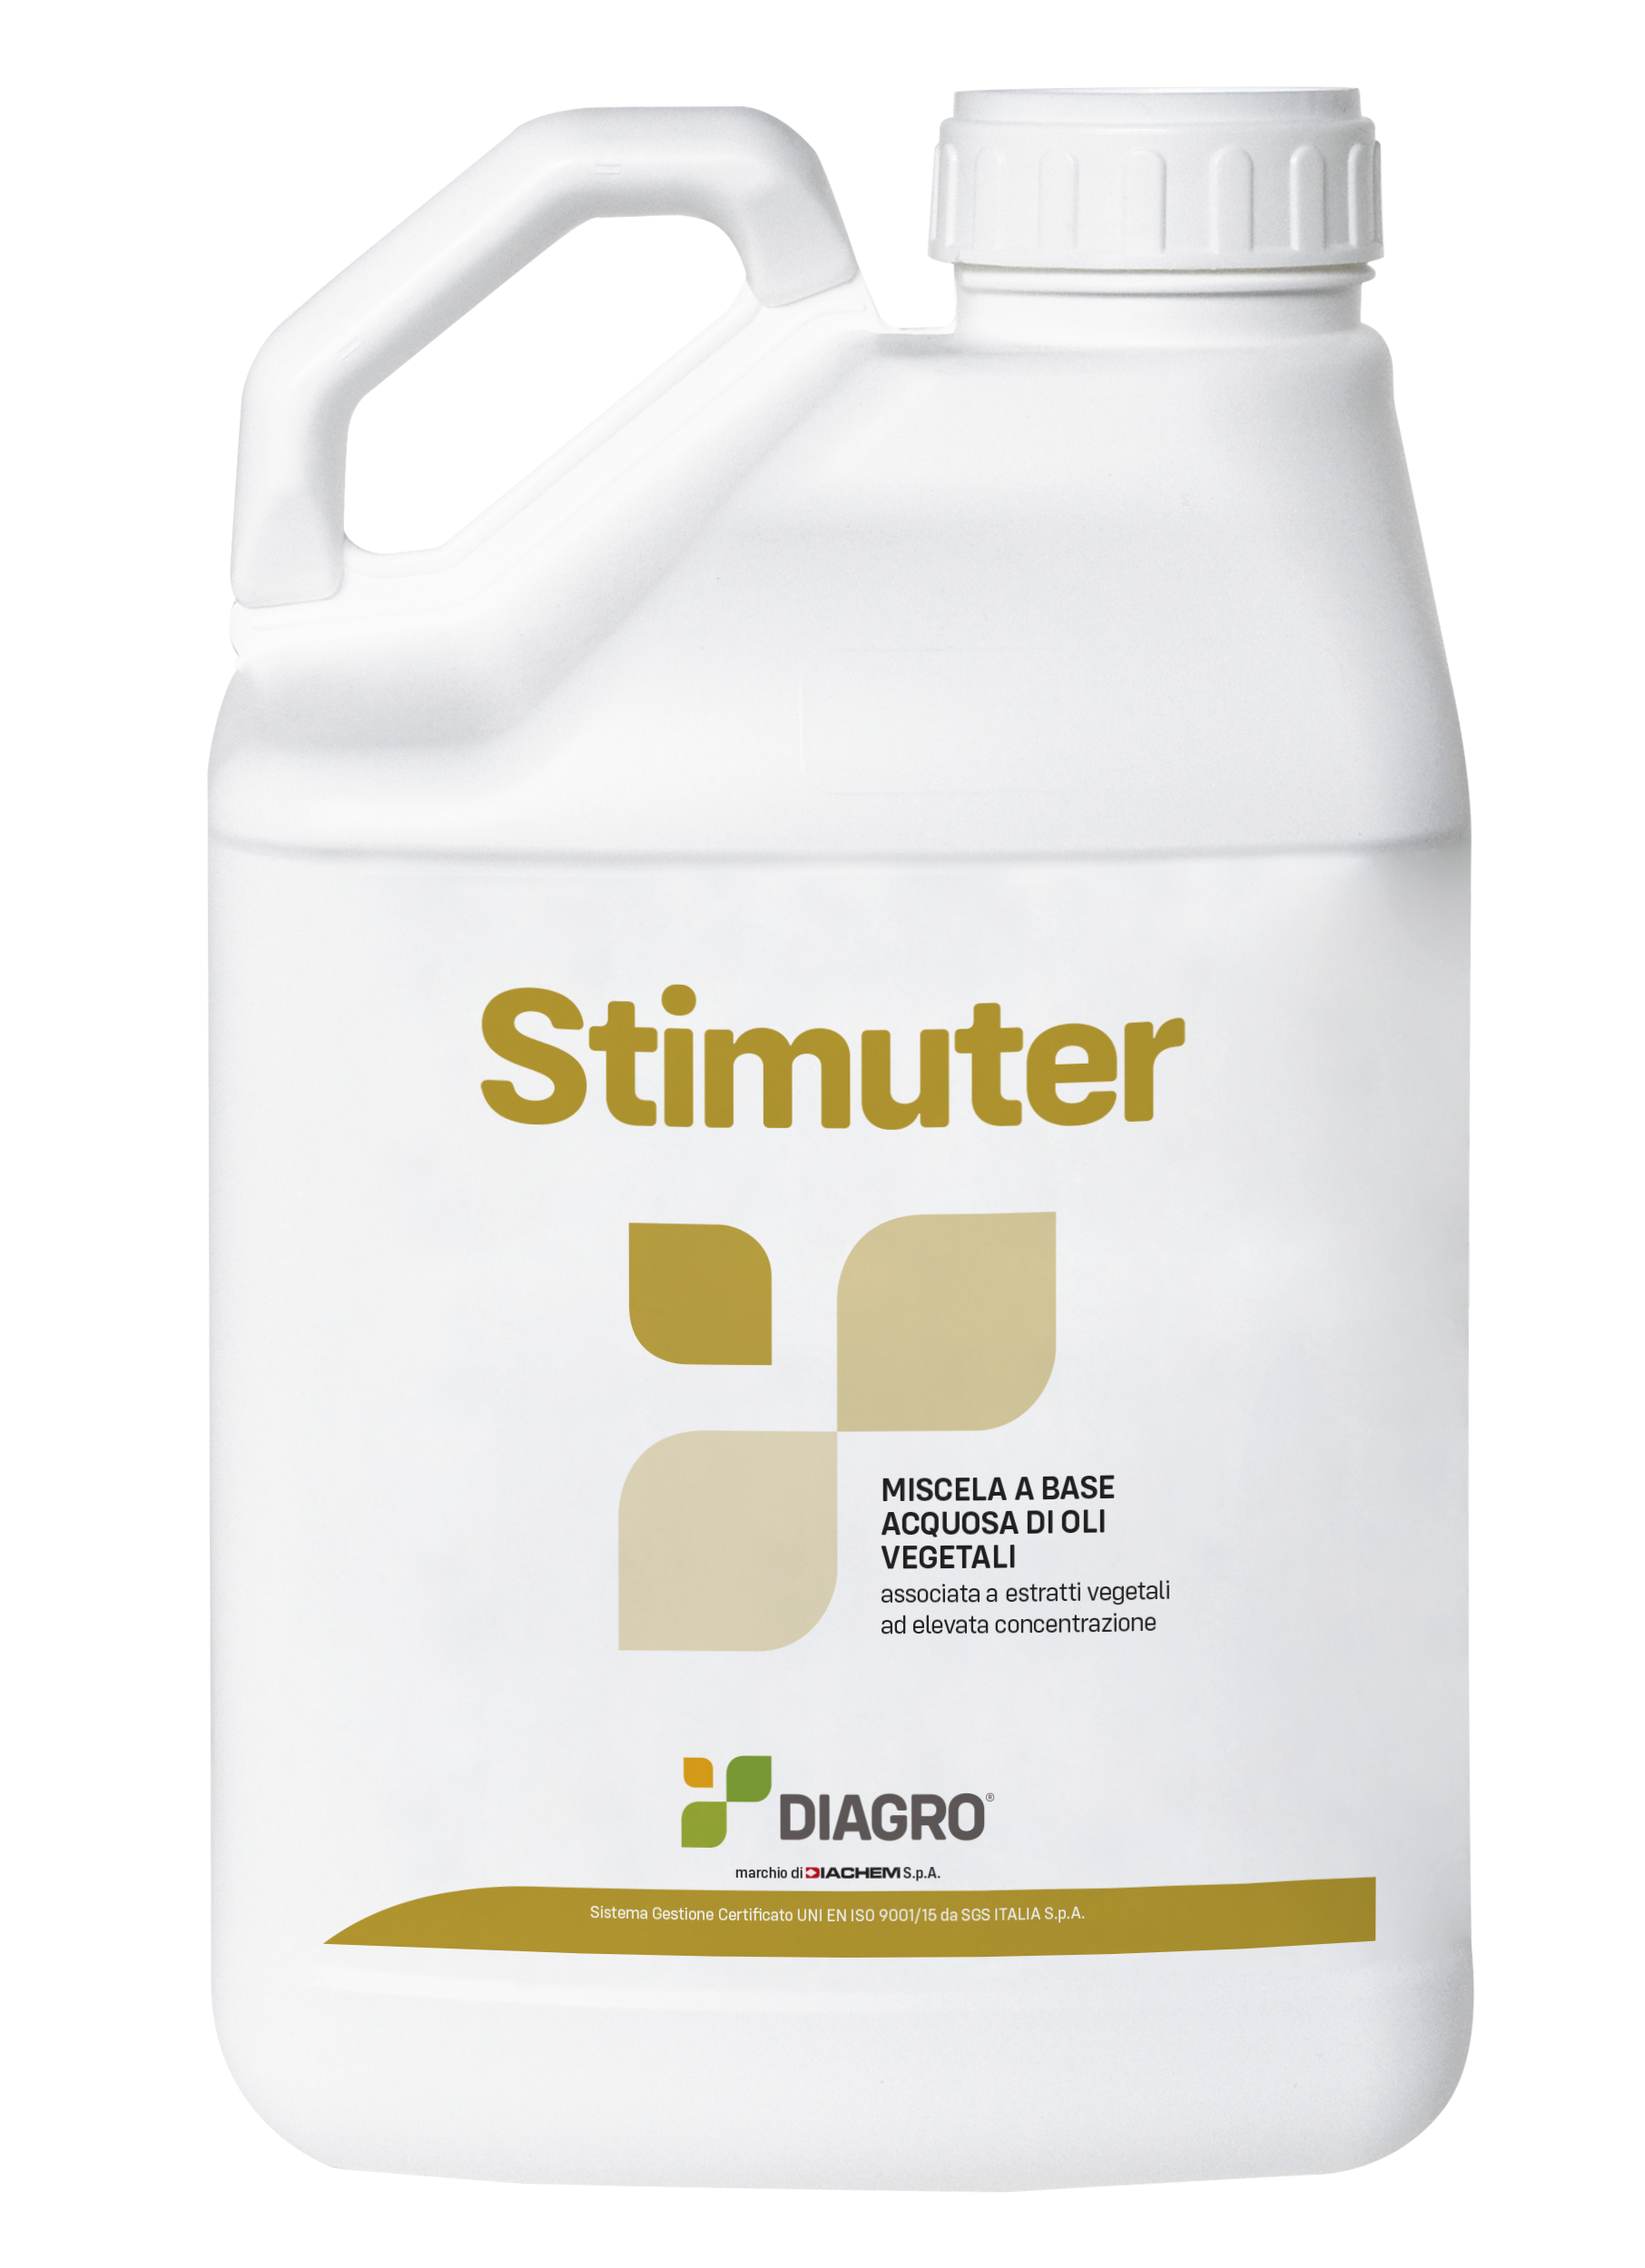 Stimuter Diagro